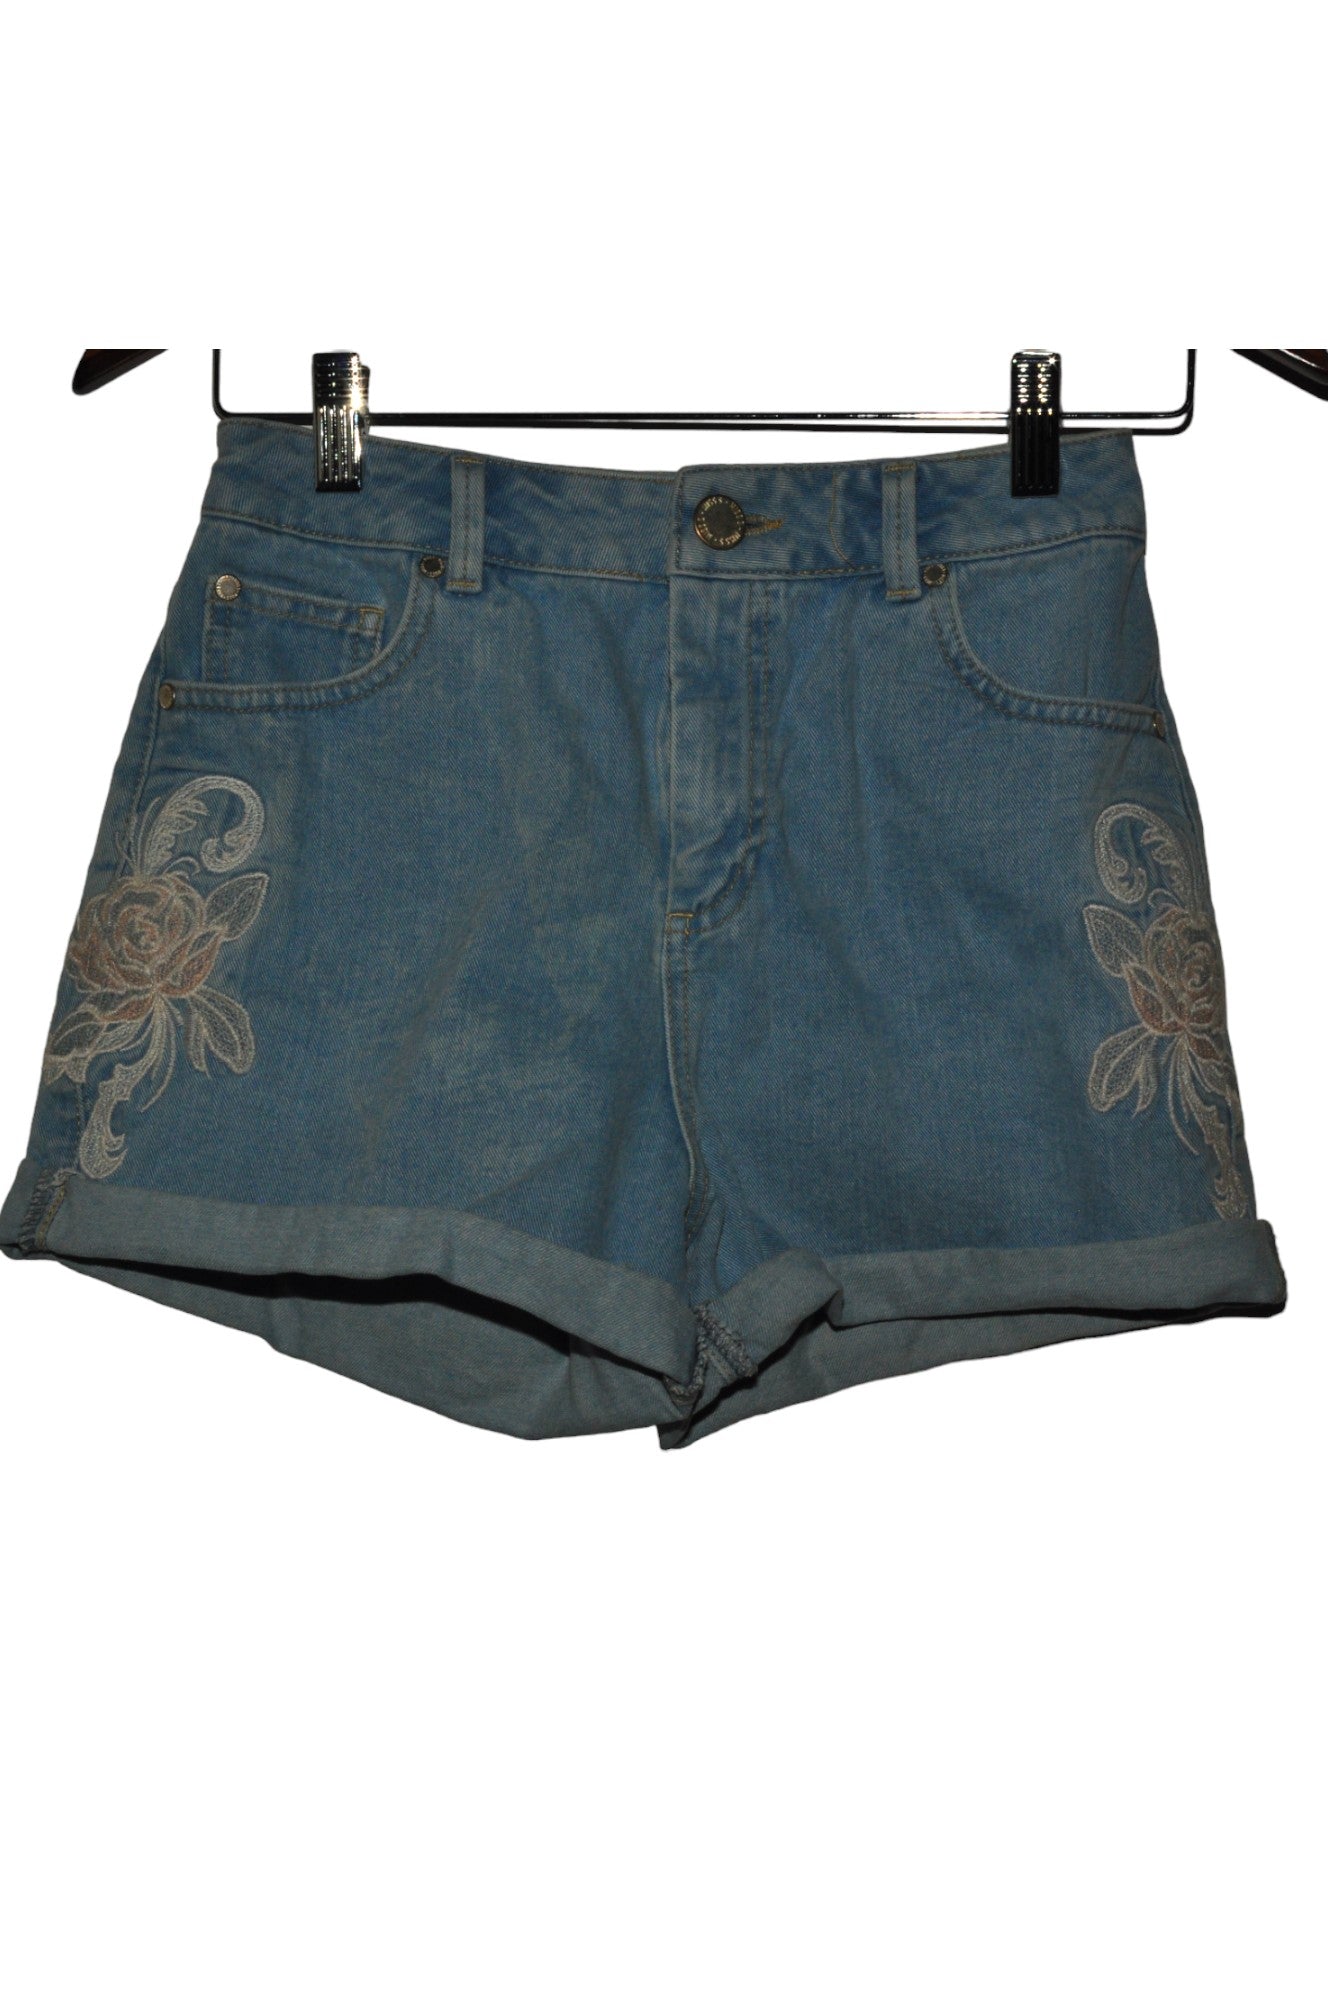 MISS SELFRIDGE Women Denim Shorts Regular fit in Blue - Size 4 | 10.49 $ KOOP